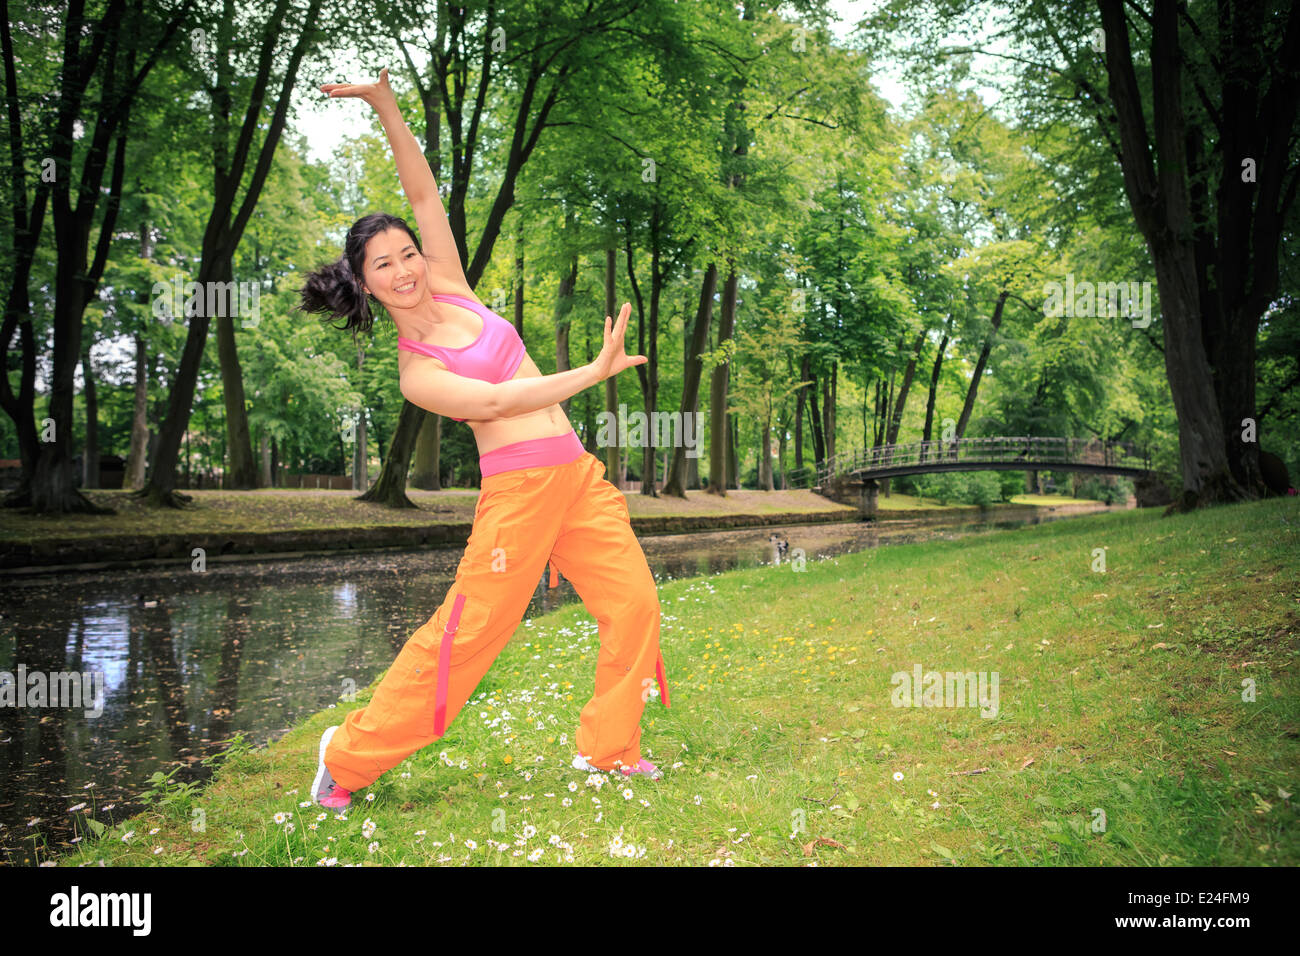 Zumba danse femme ou d'aérobic dans un ancien parc Banque D'Images